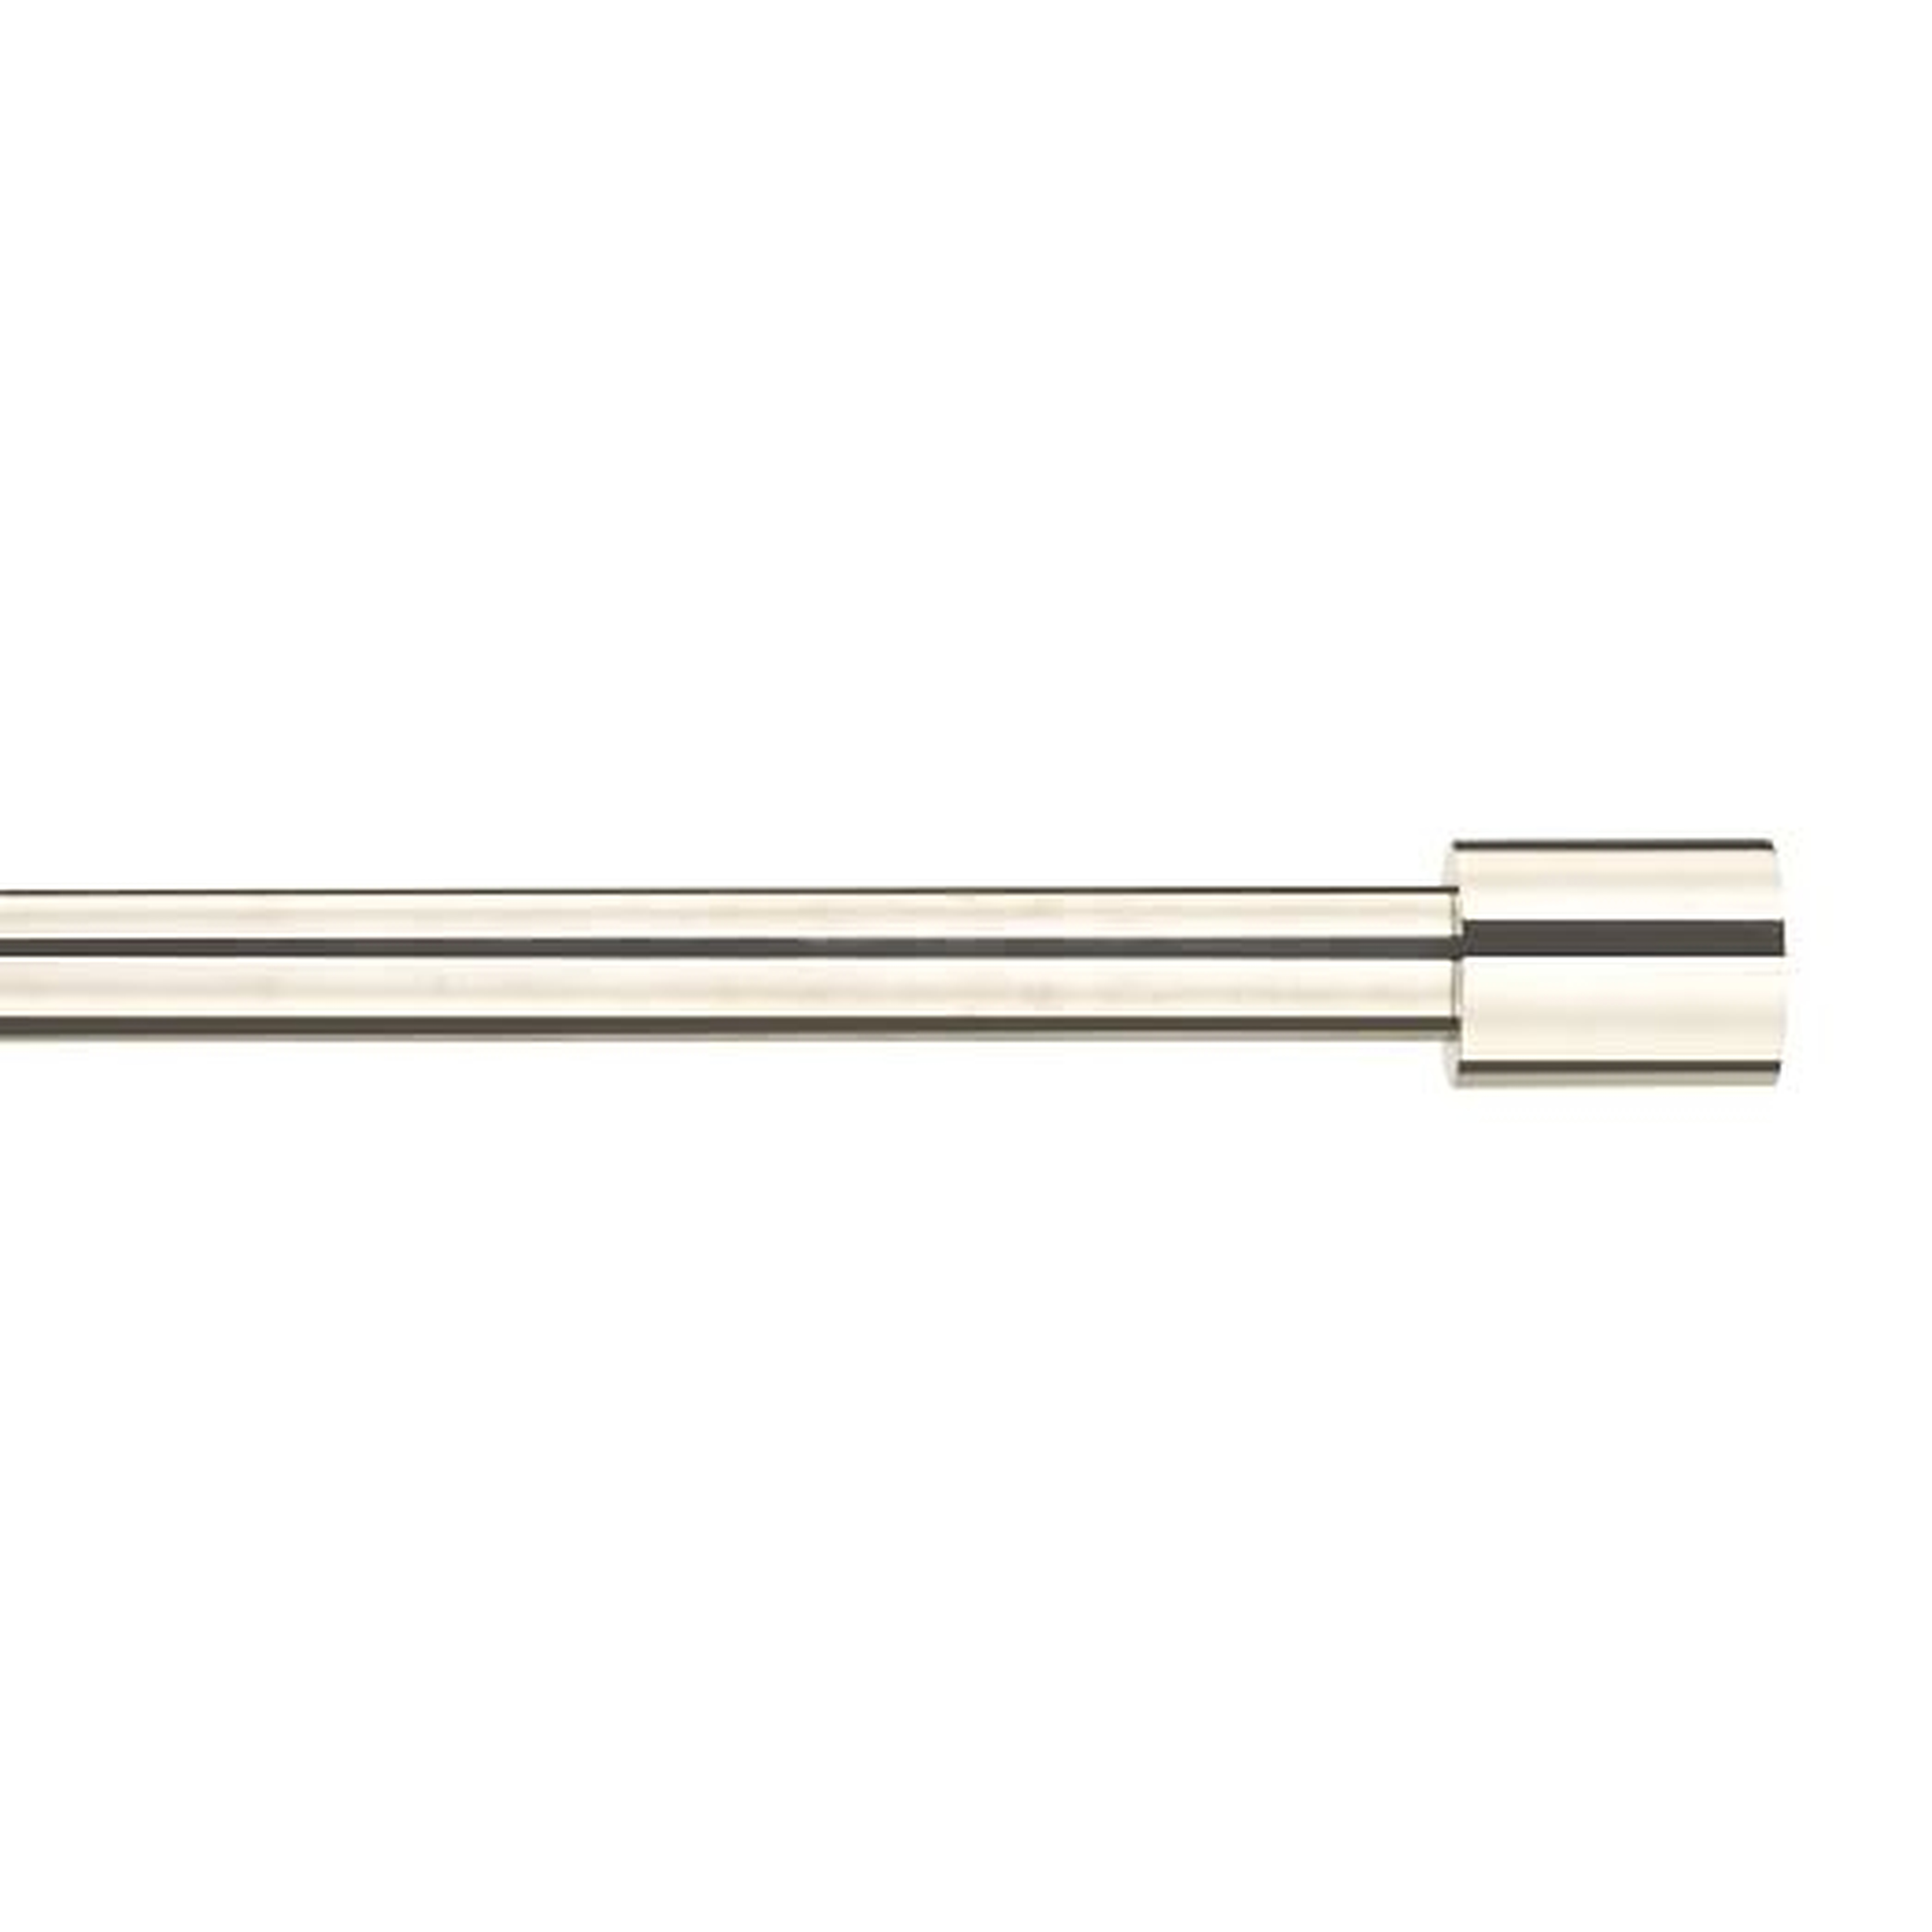 Oversized Adjustable Metal Rod - Polished Nickel - West Elm